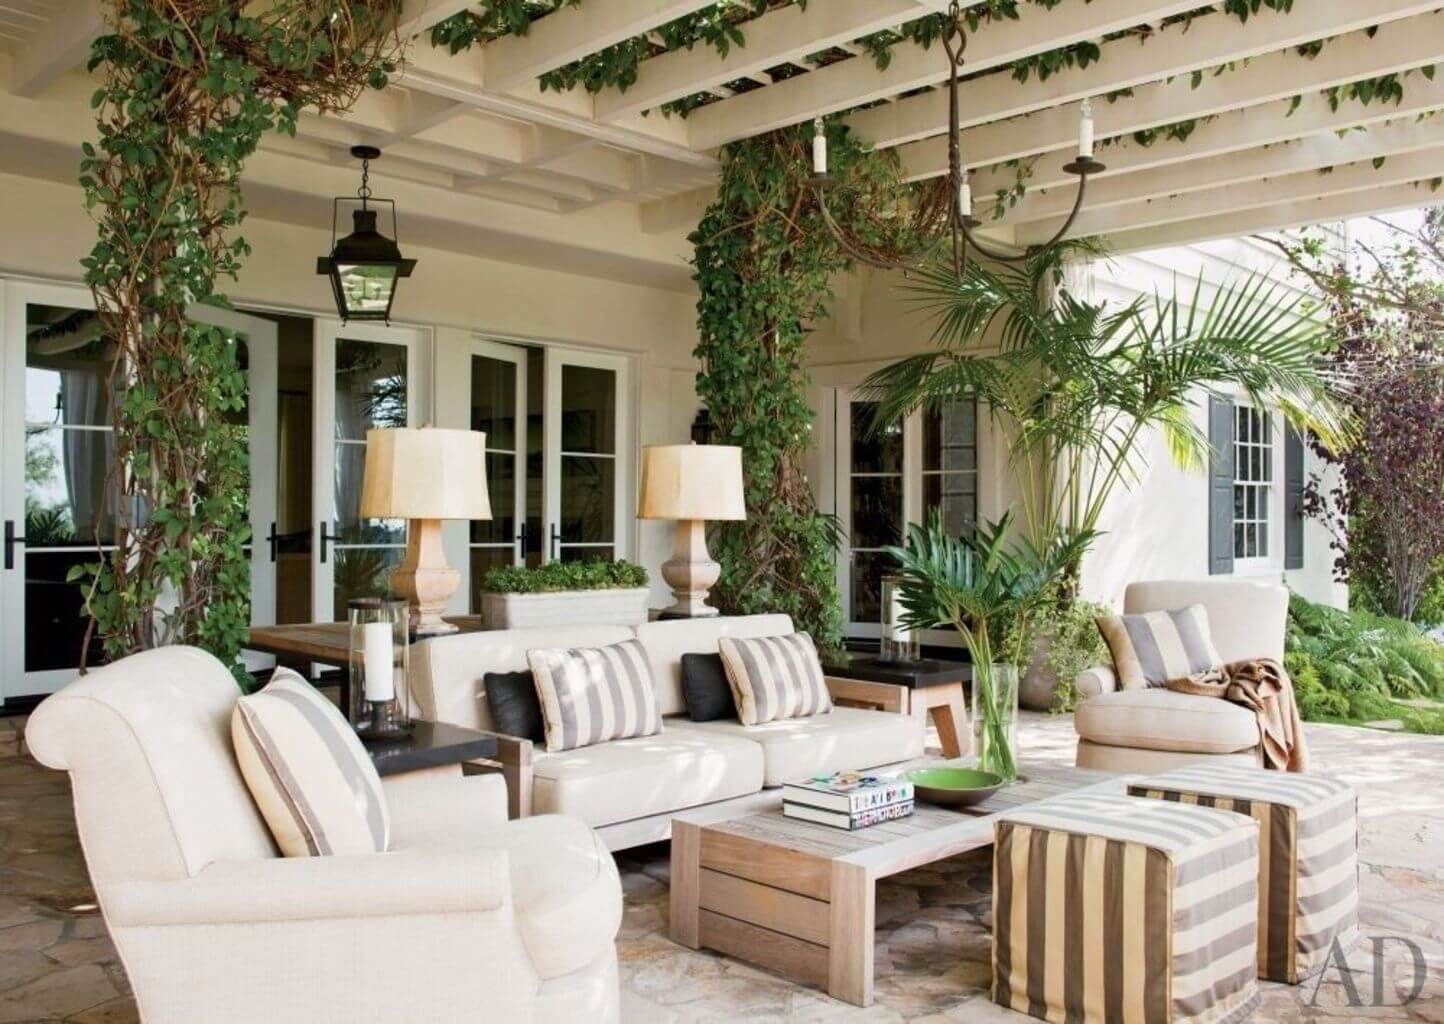 Bel Air Outdoor Living Room 